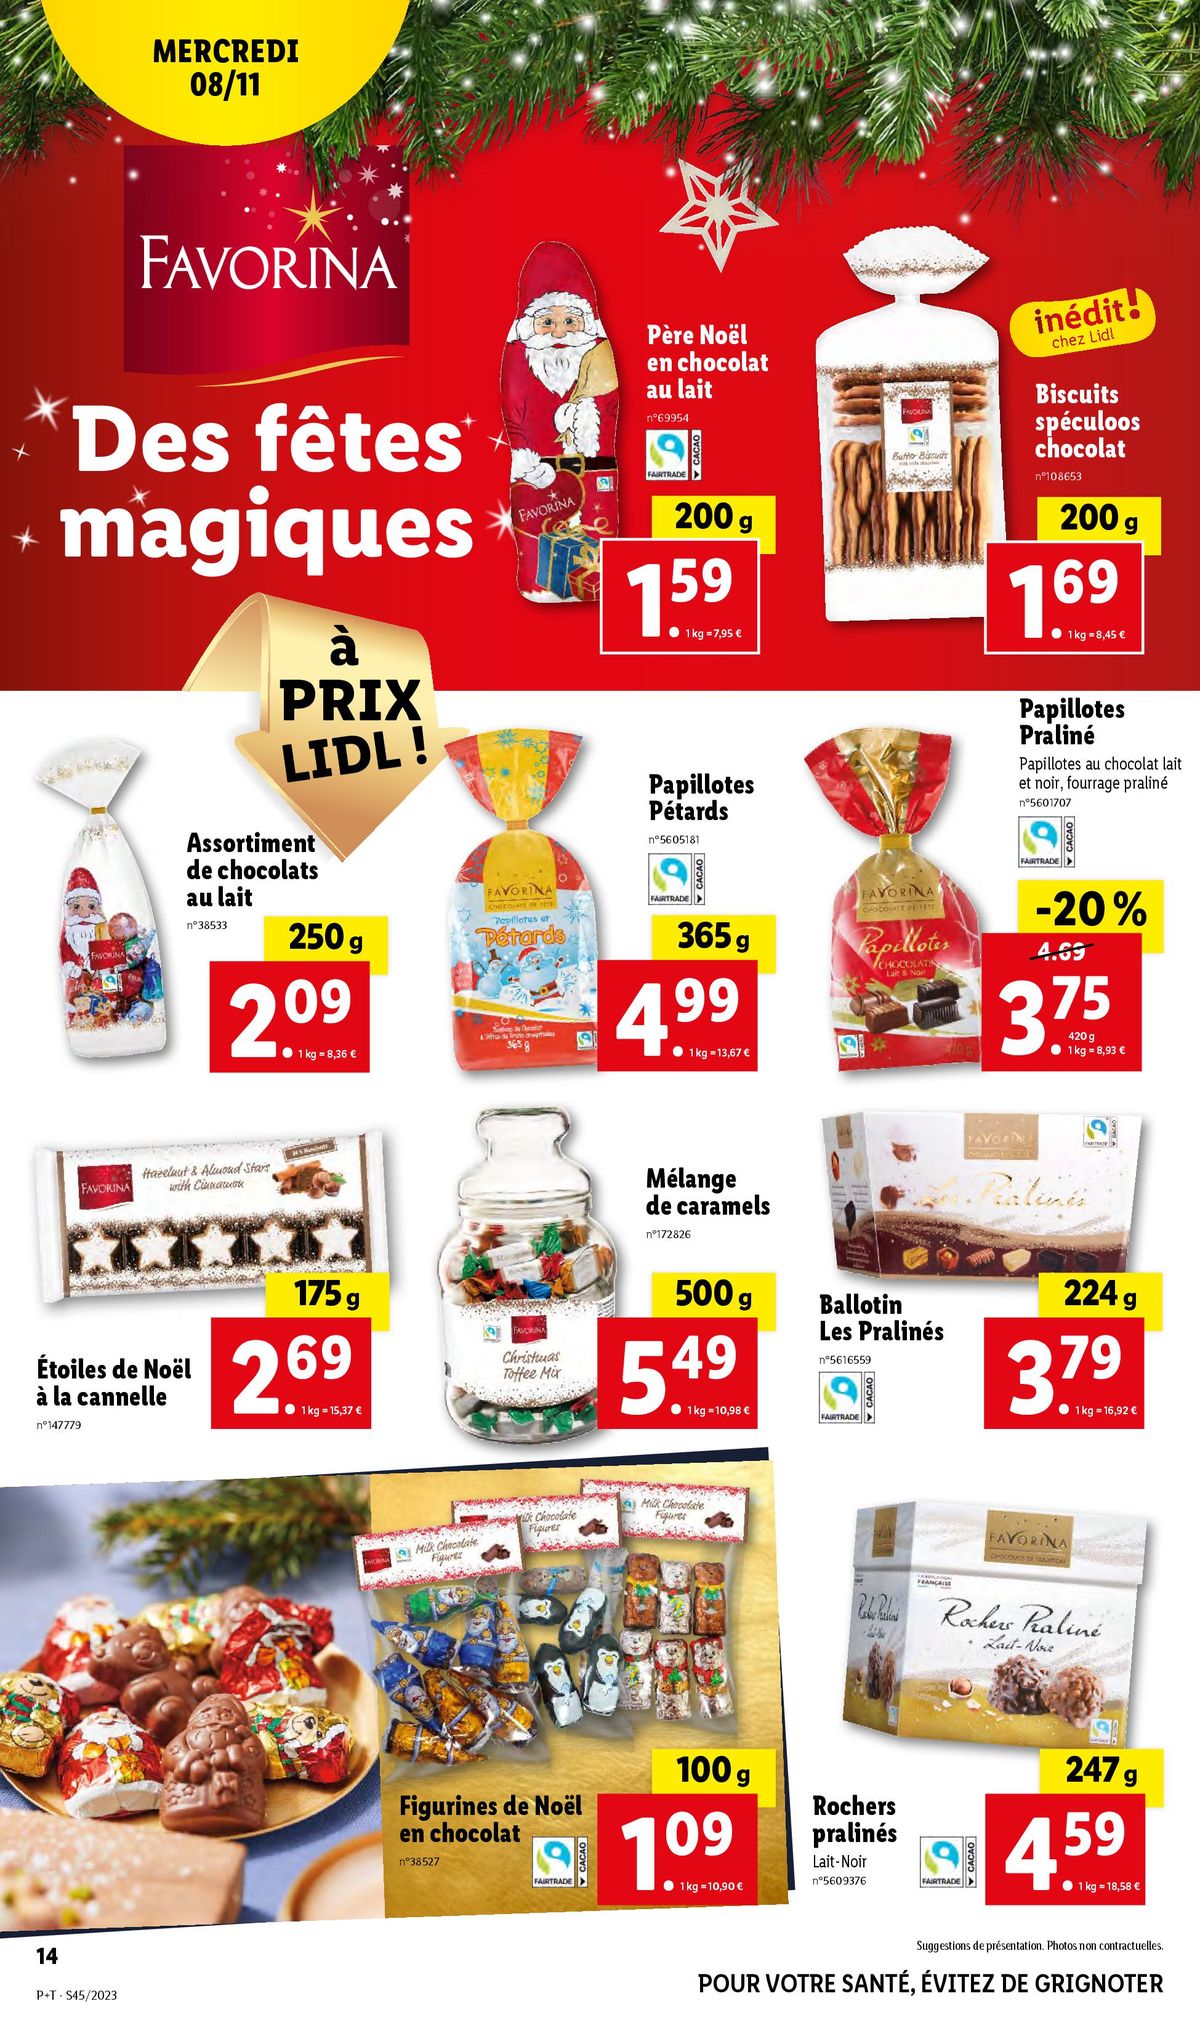 Catalogue Des fêtes magiques à prix LIDL, page 00014